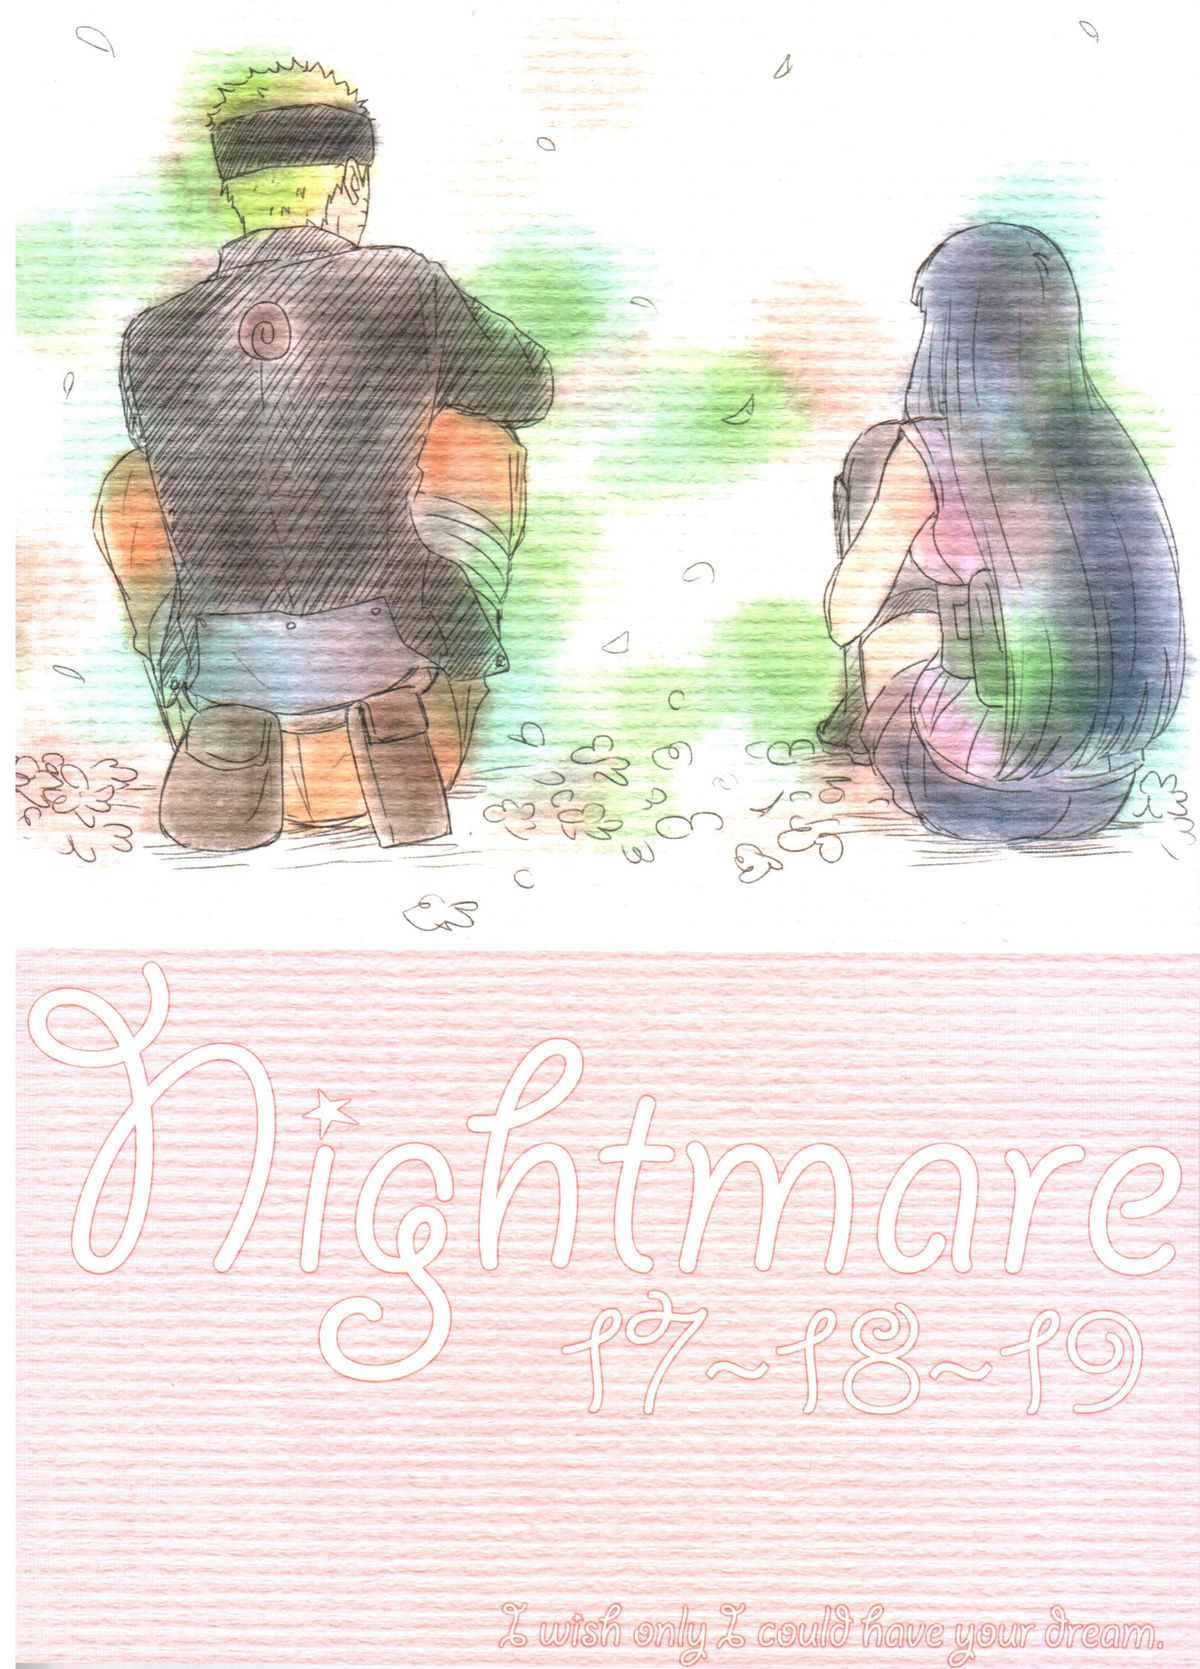 (全忍集結) [blink (しもやけ)] A Sweet Nightmare (NARUTO -ナルト-)